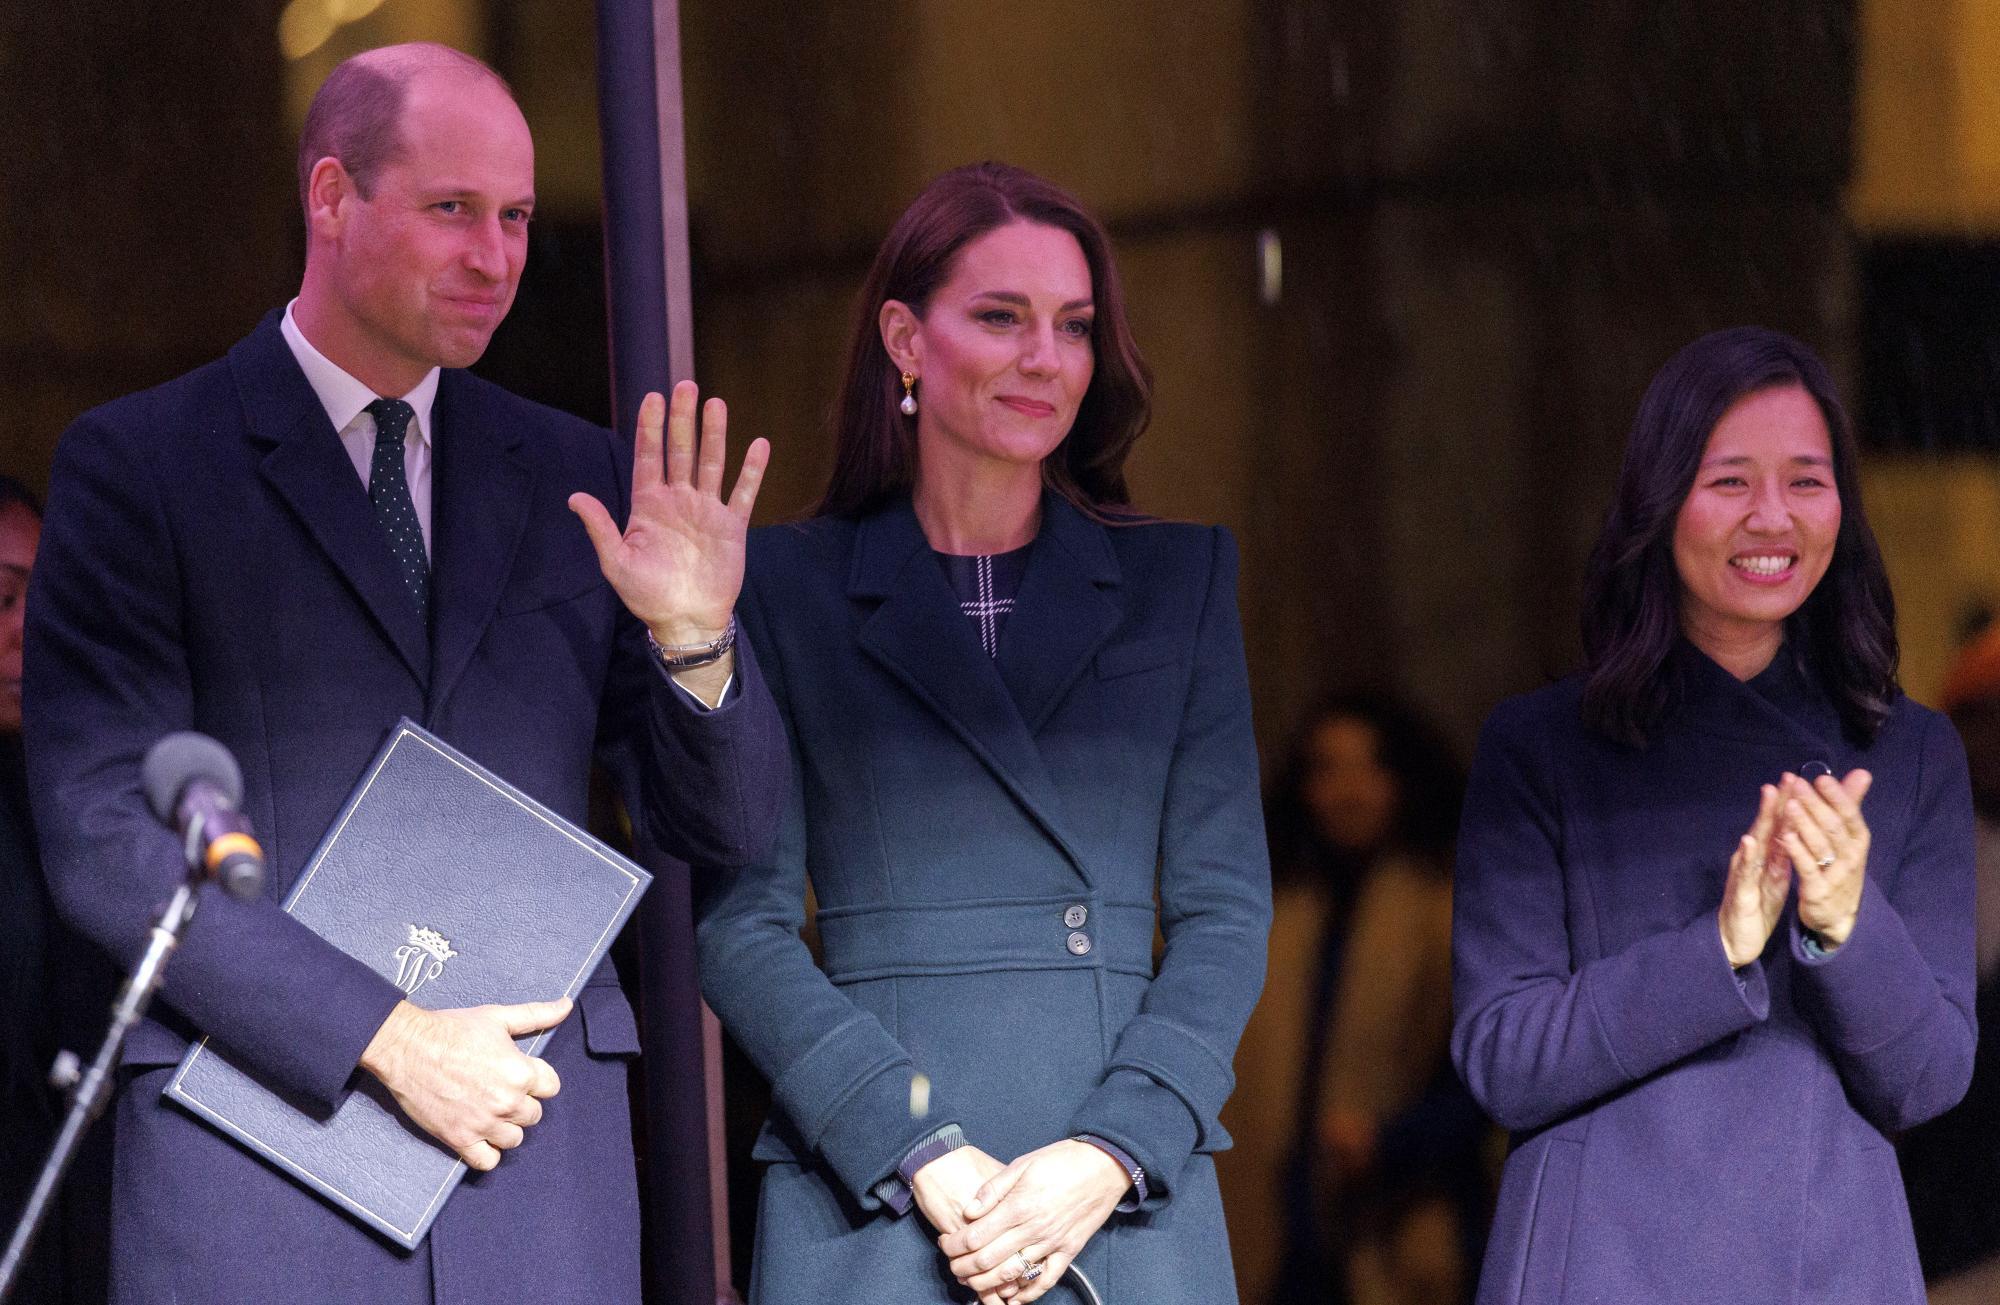 Bericht: Kate wird möglicherweise nie wieder zu früherer royalen Rolle zurückkehren